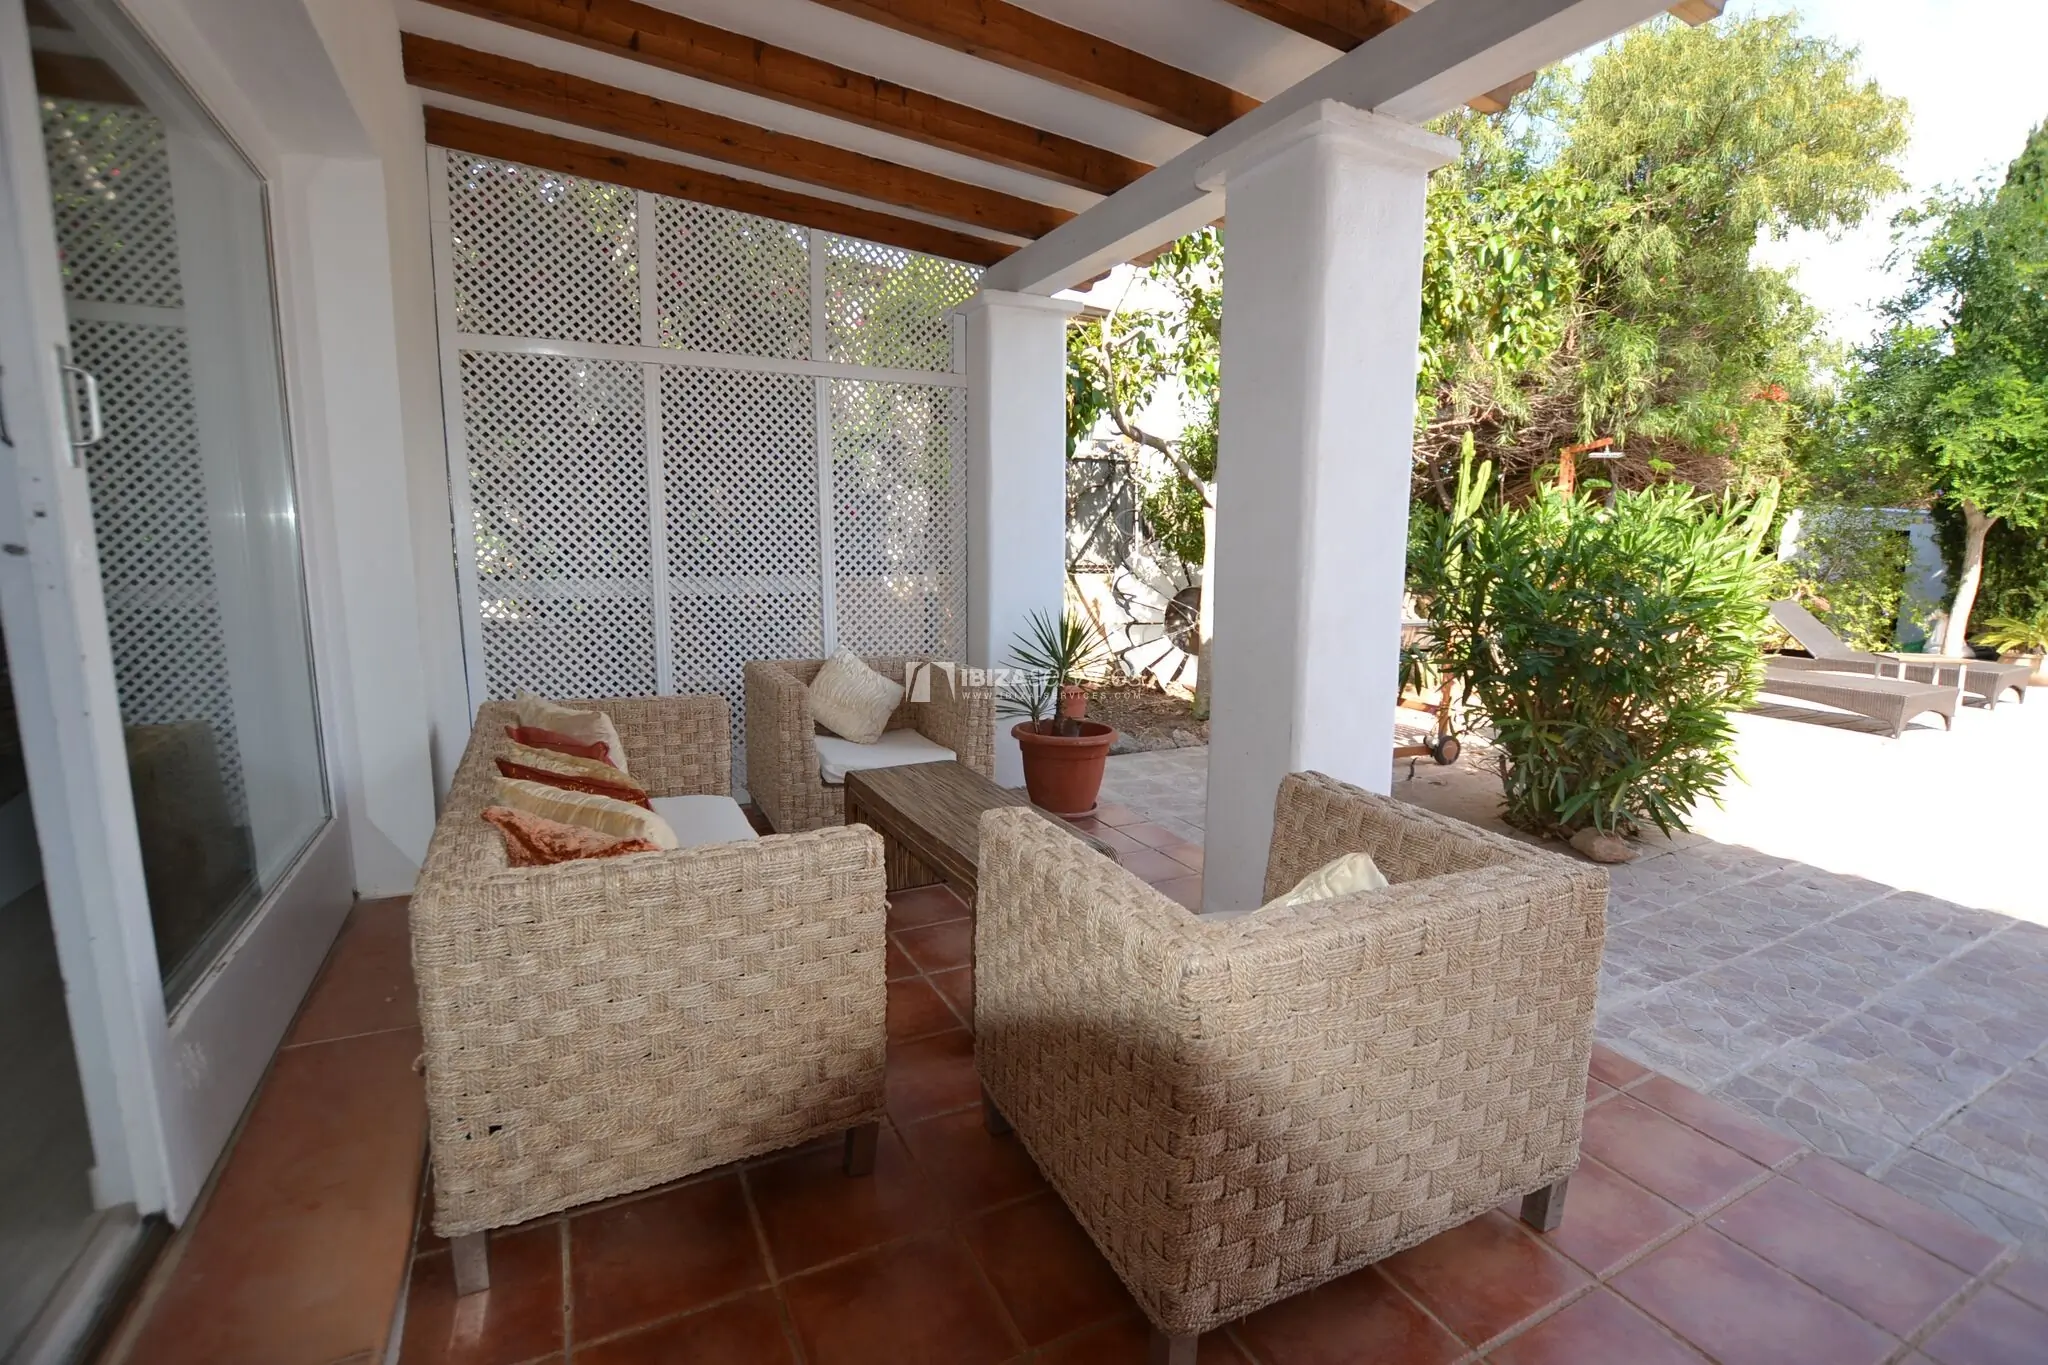 Charming villa with pool in San jordi – weekly rental